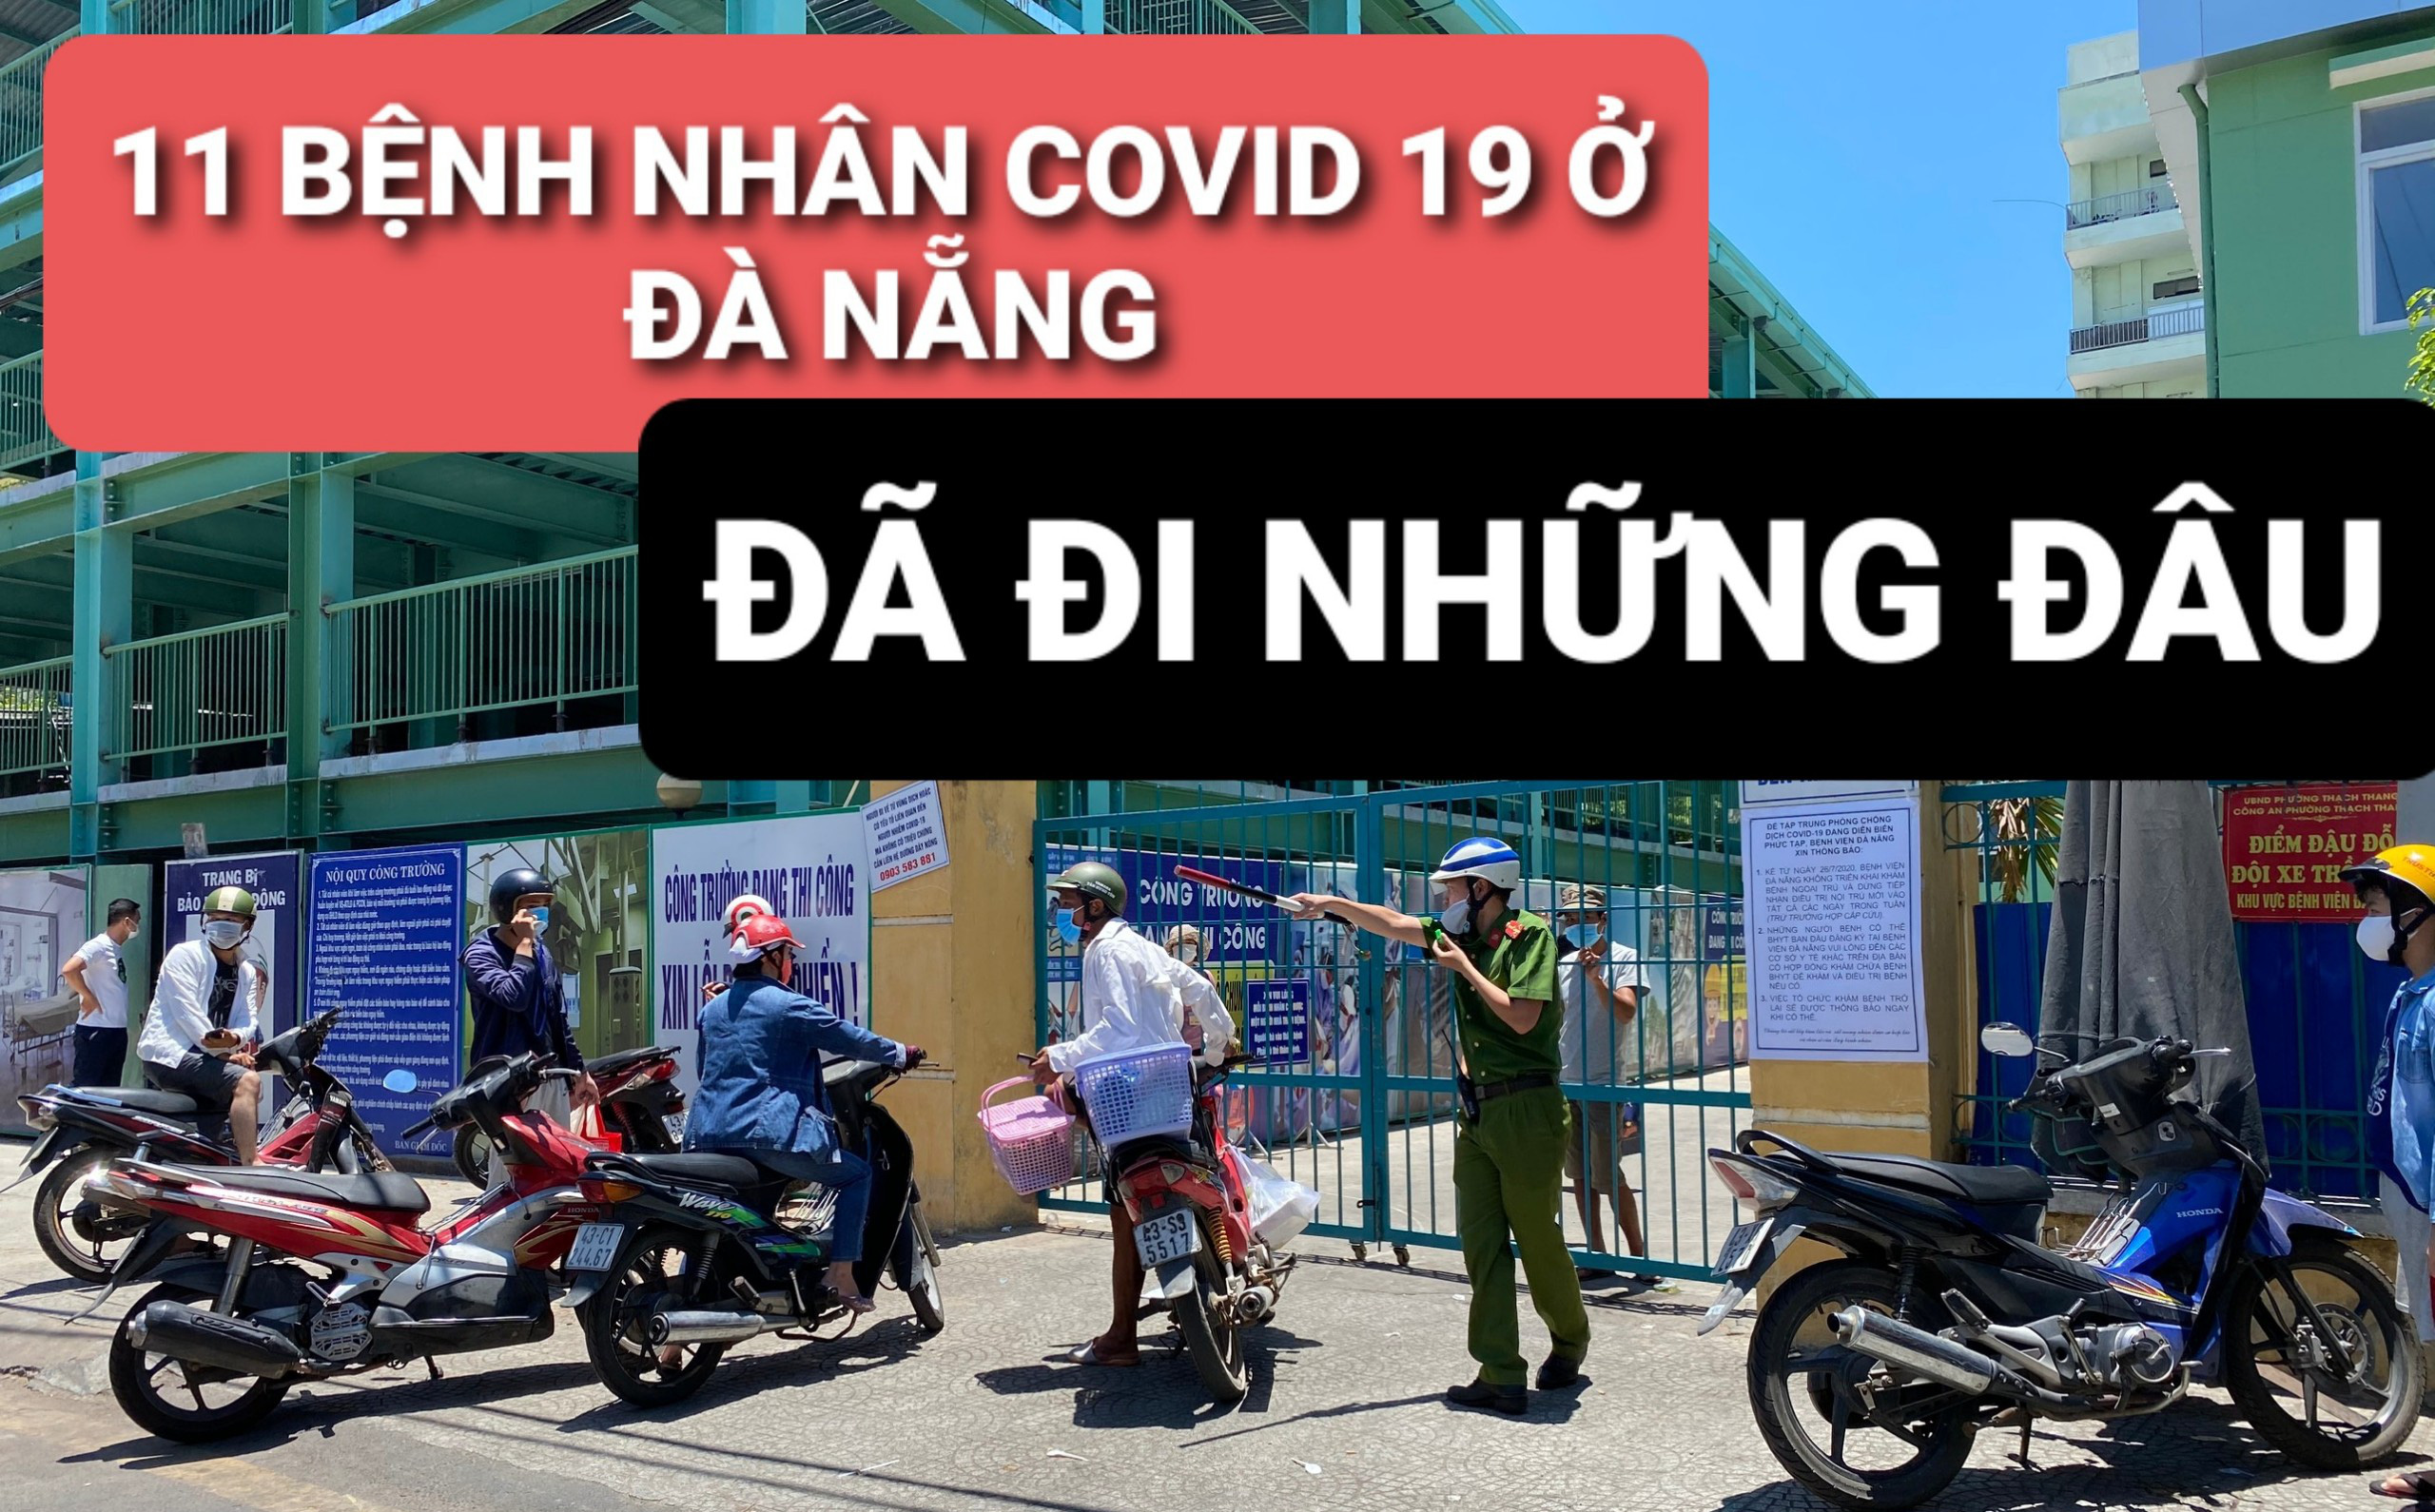 Lịch trình 11 bệnh nhân COVID-19 tại Đà Nẵng vừa công bố